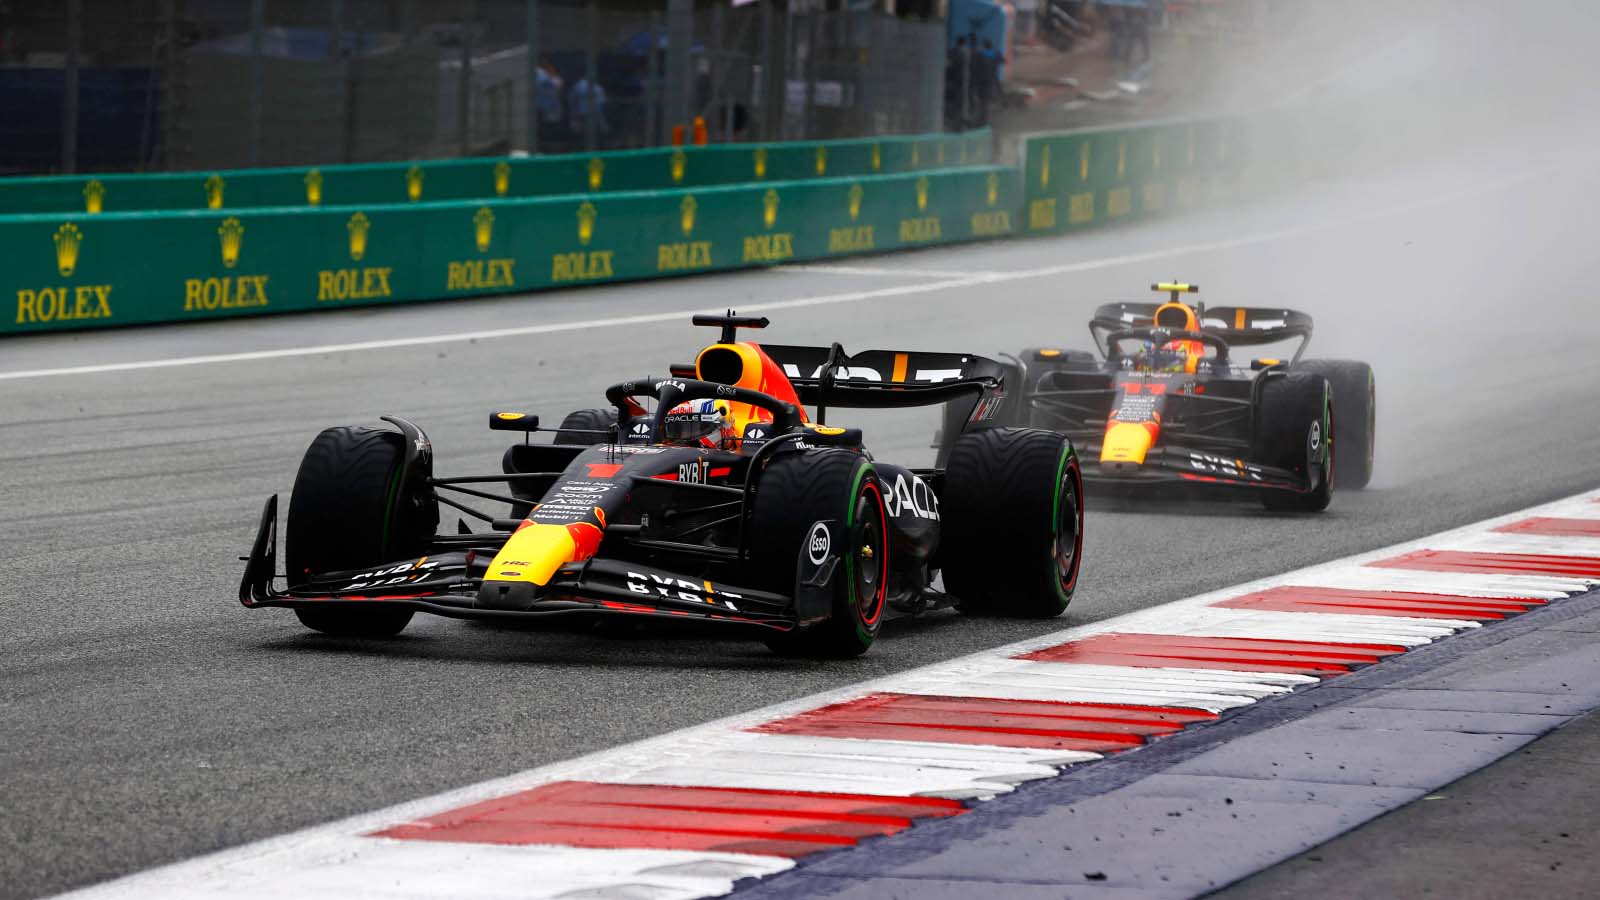 Sprint Max Verstappen heads Sergio Perez in frantic wetdry Austrian